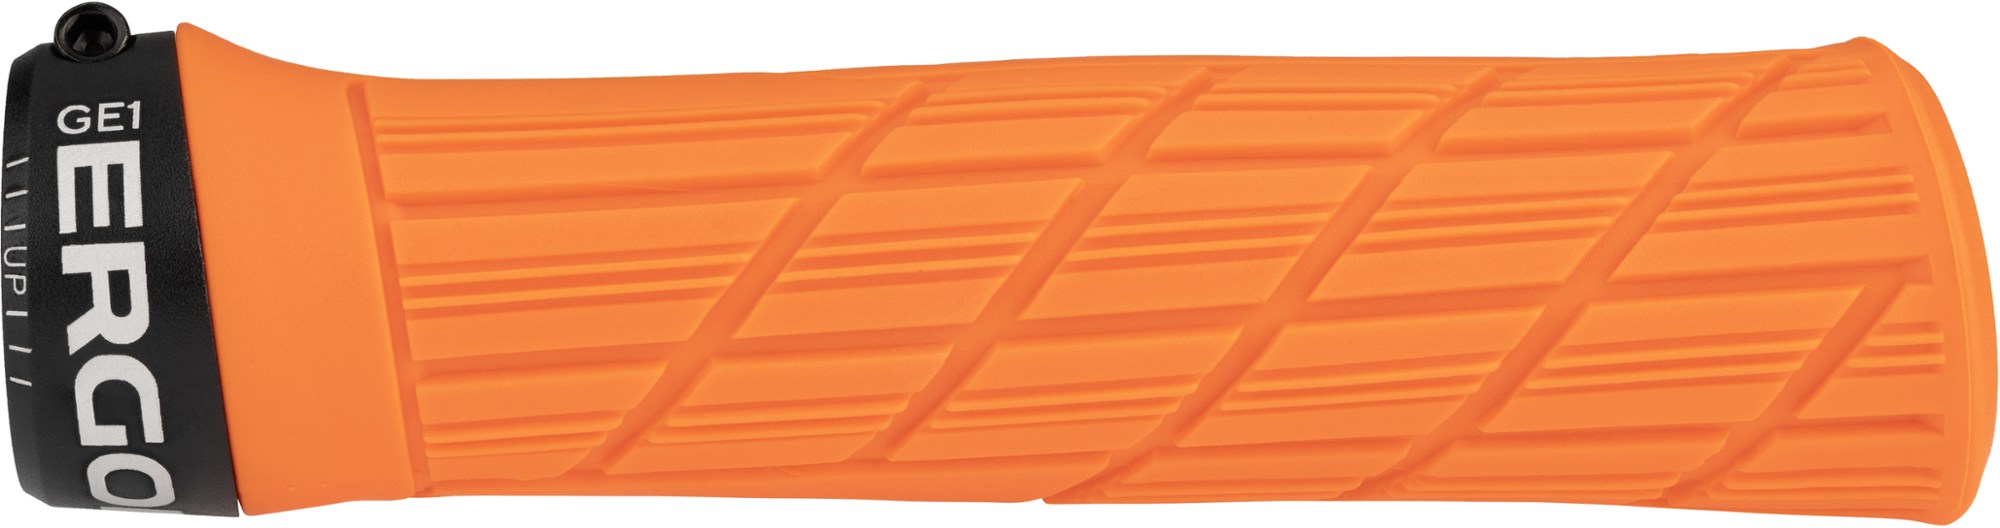 Ручки руля GE1 Evo с фиксатором — один размер Ergon, оранжевый